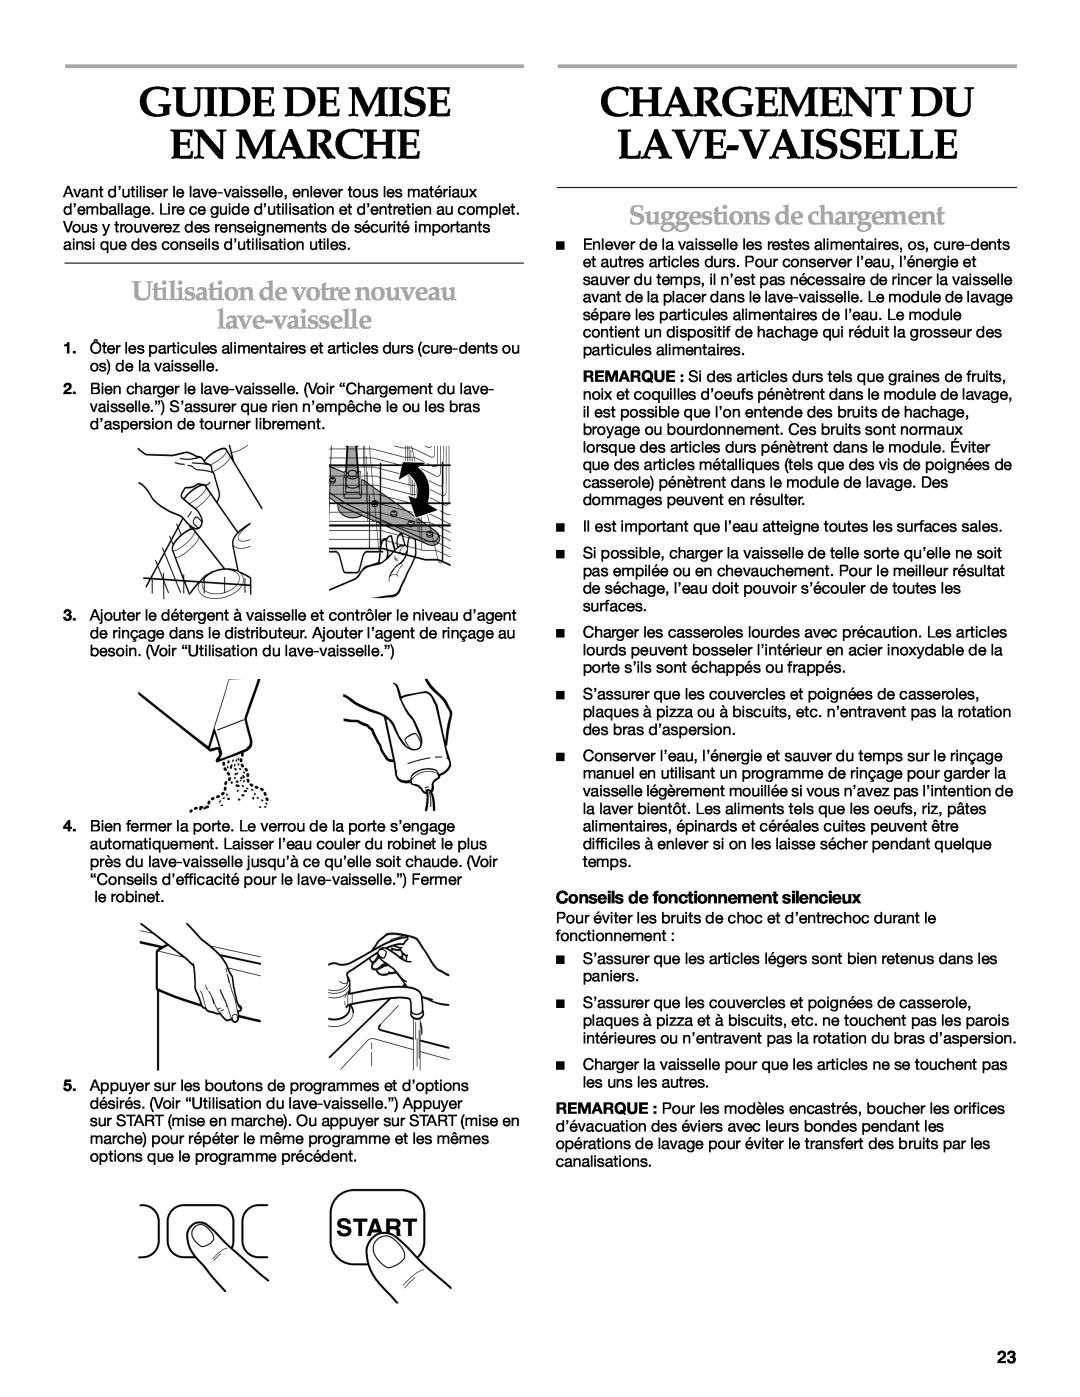 KitchenAid KUDR01TJ manual Guide De Mise En Marche, Utilisation de votre nouveau lave-vaisselle, Suggestions de chargement 